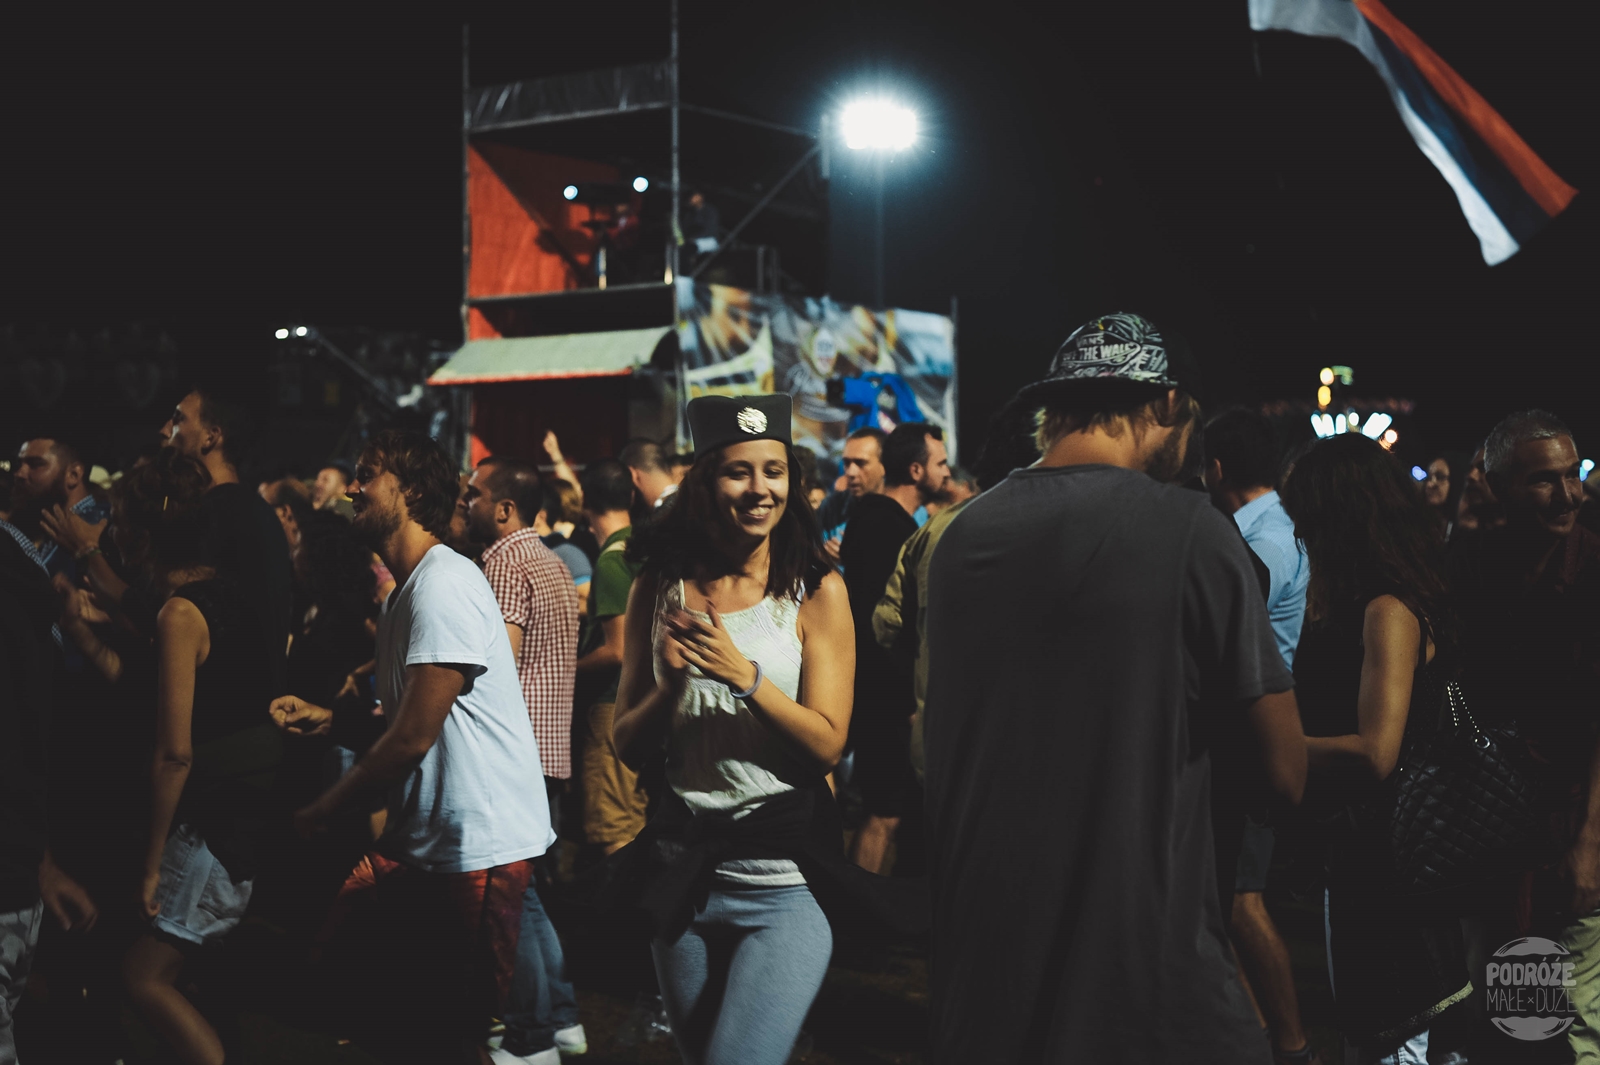 Serbia festiwal trąb w Guca koncert na stadionie